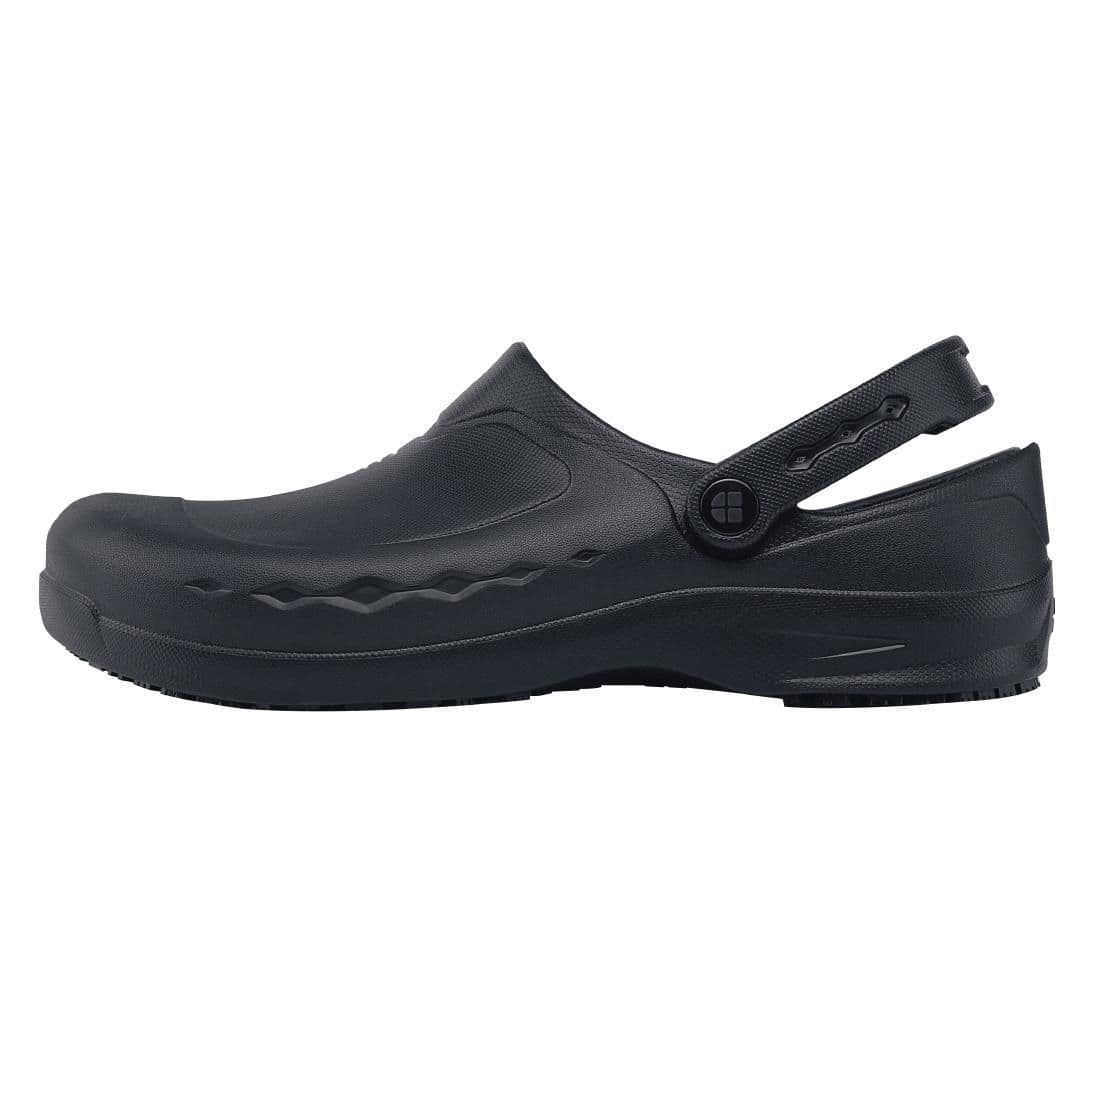 BB569-37 Shoes for Crews Zinc Clogs Black